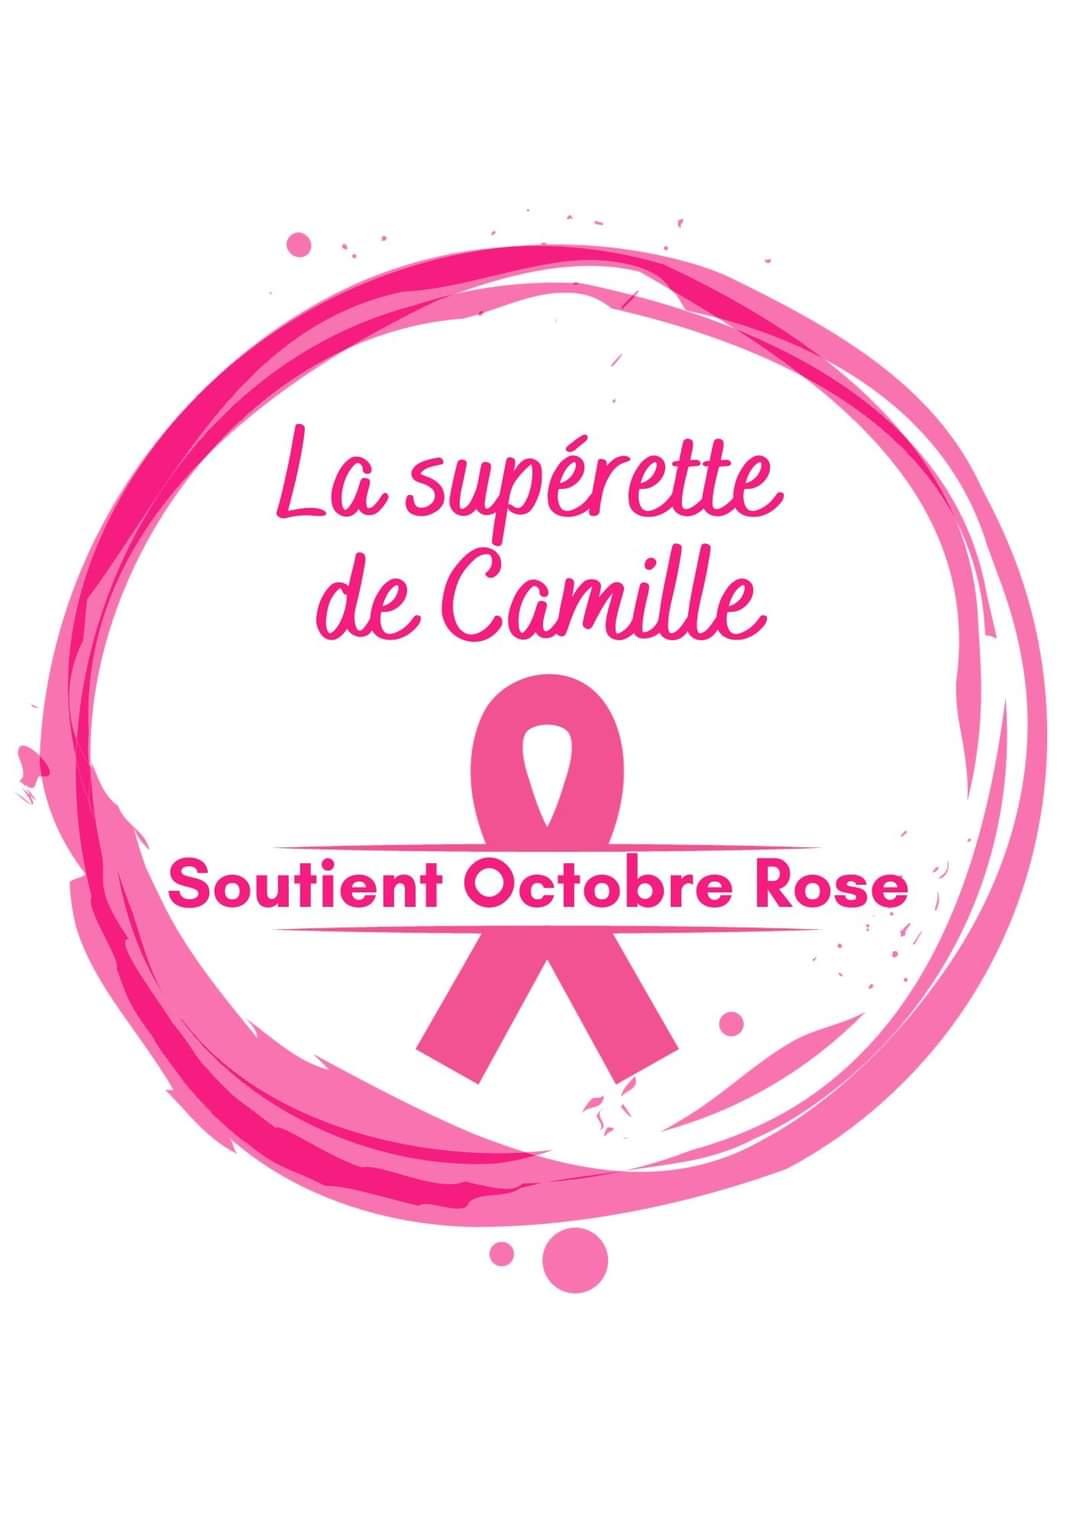 Image de couverture - La supérette de Camille s'associe à la campagne 2023 d'octobre rose